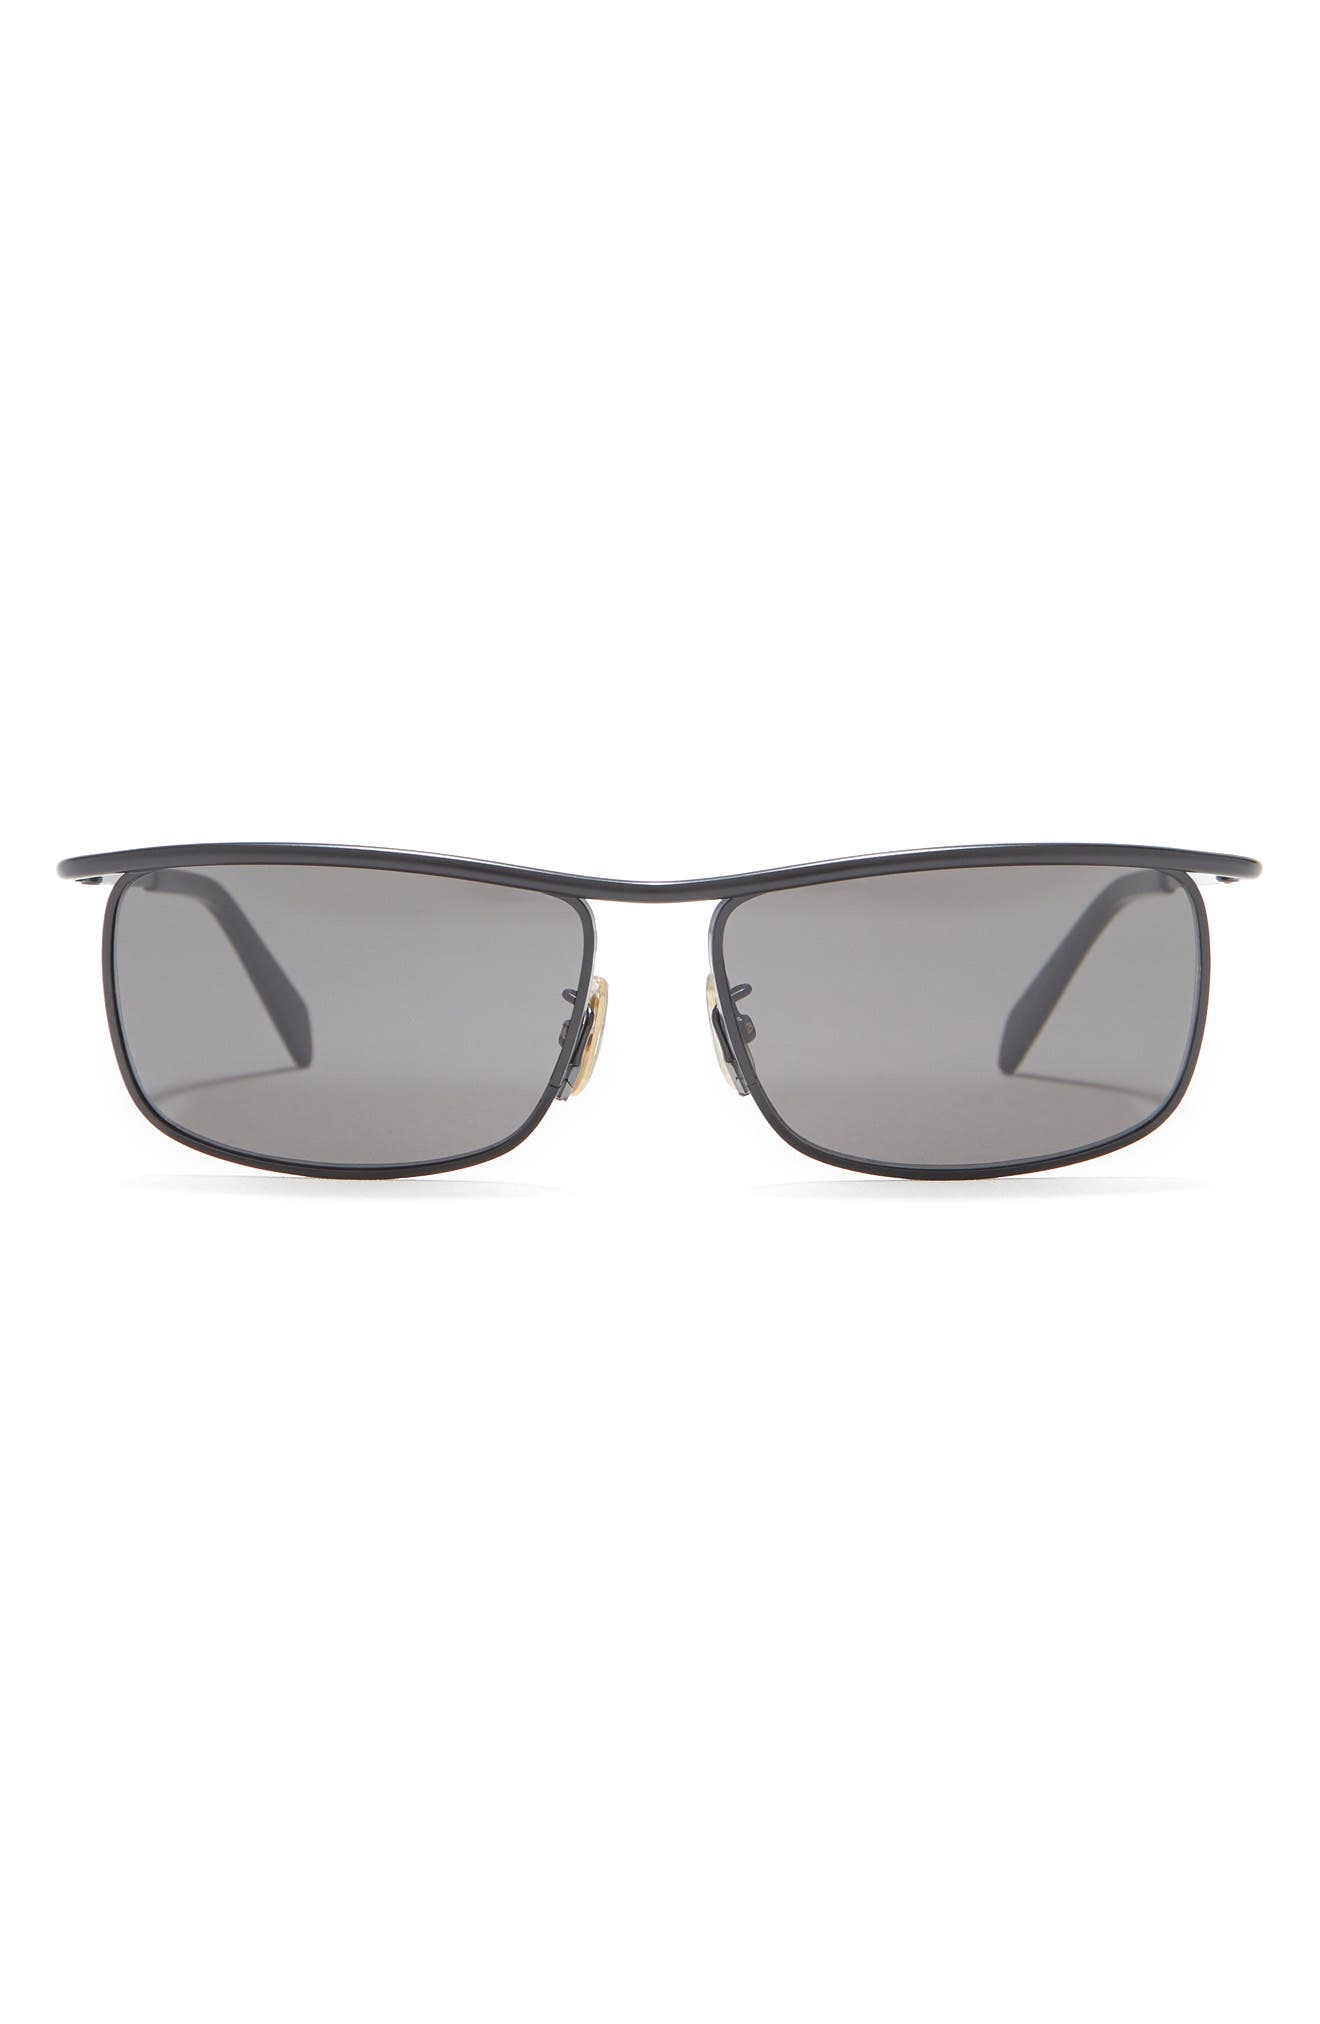 Celine 58mm Rectangular Sunglasses In Matte Black / Smoke | ModeSens